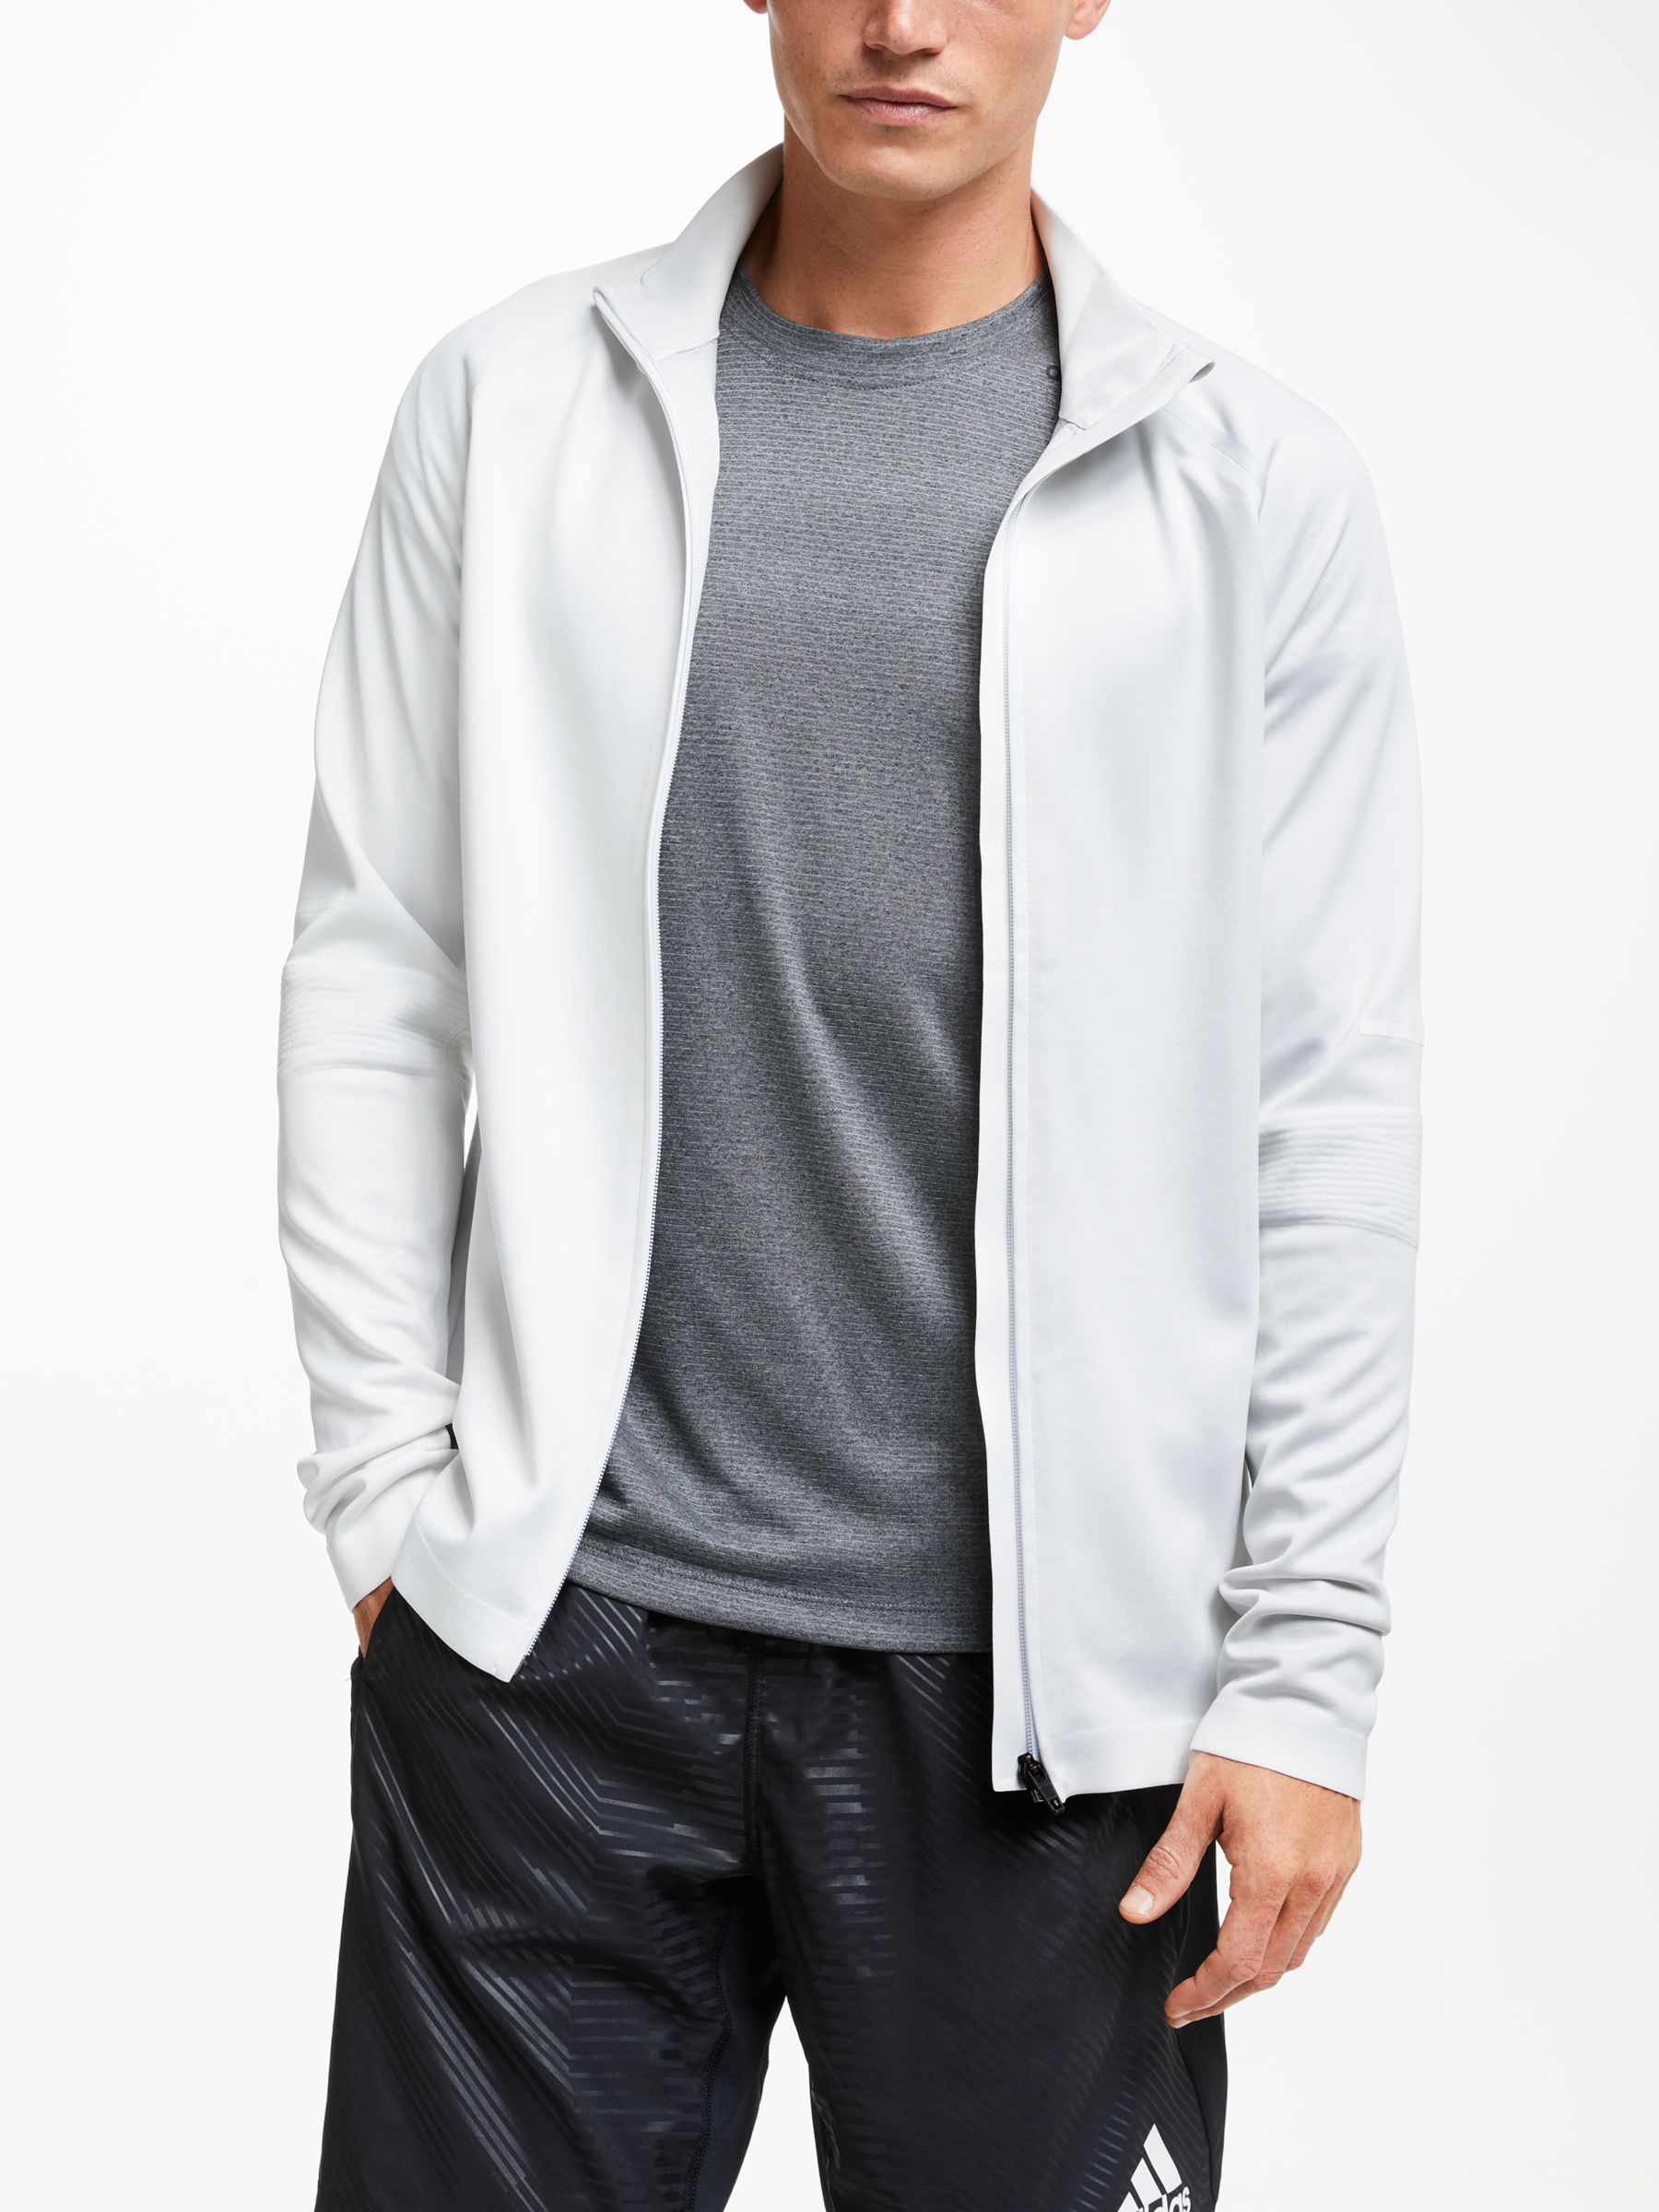 white and grey adidas jacket